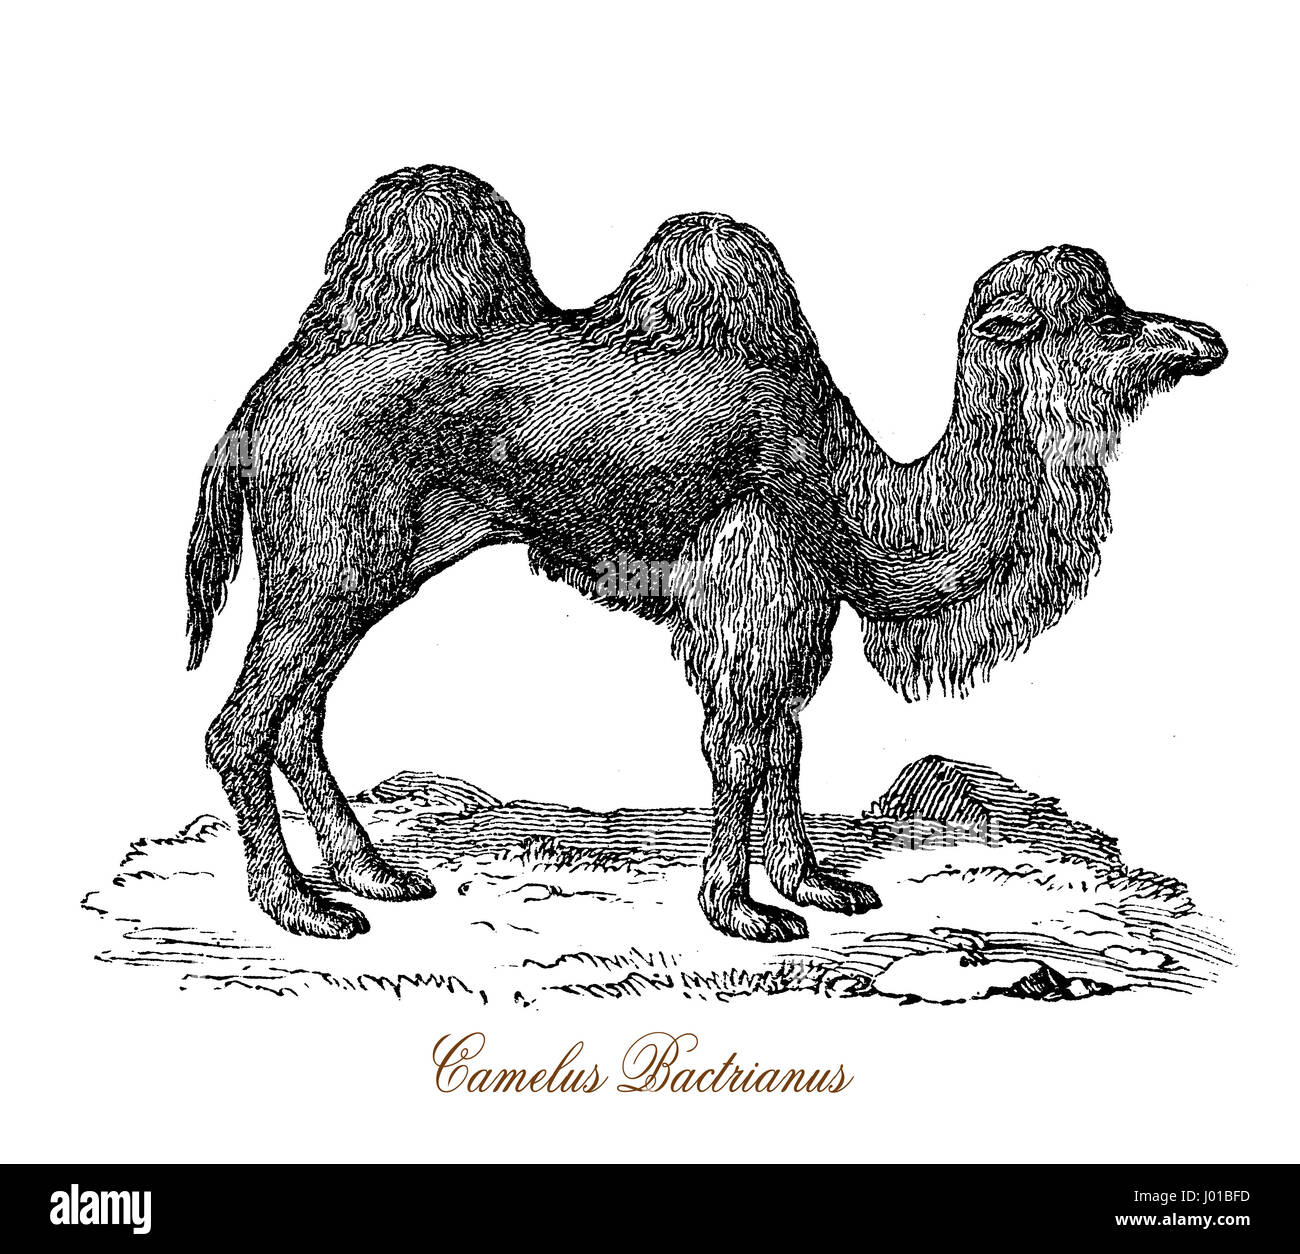 Il cammello Bactrian (Camelus bactrianus) è un grande anche-toed ungulato nativa per le steppe dell'Asia centrale. Il cammello Bactrian presenta due gobbe sul suo dorso, in contrasto con il singolo-humped Cammello Dromedario. Foto Stock